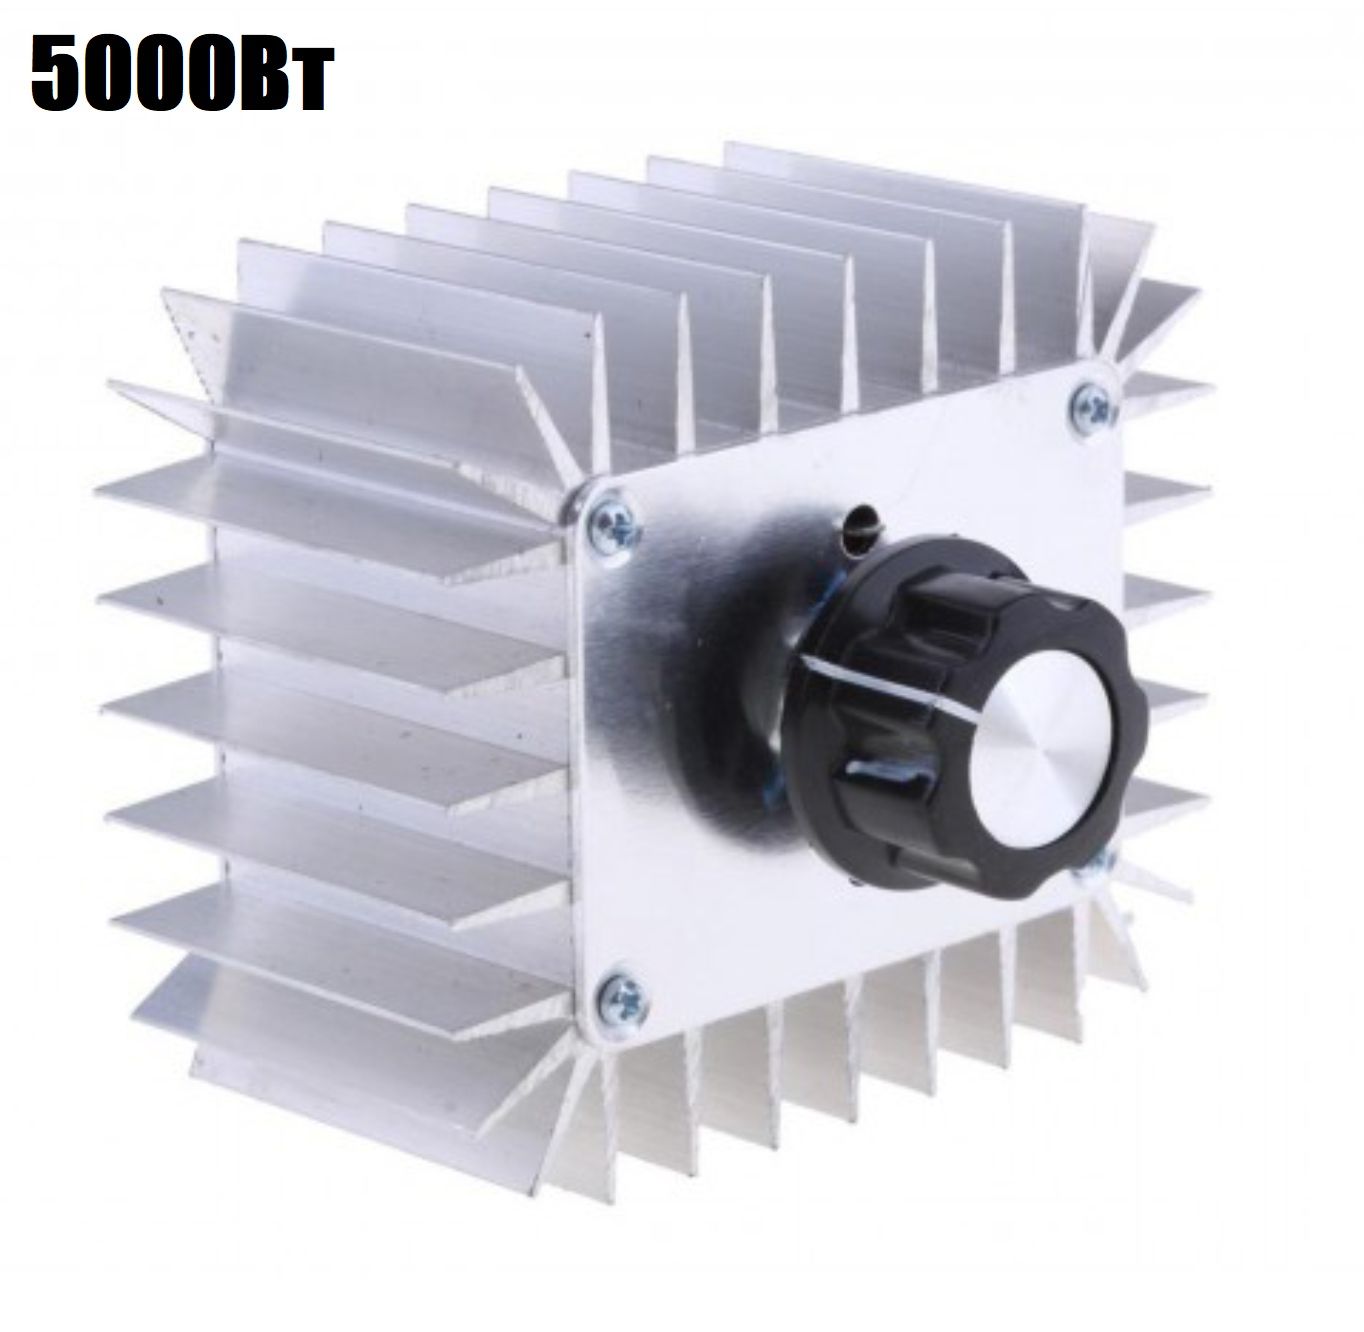 Симисторный 9V регулятор переменного напряжения, температуры, света, скорости 5000Вт (У) симисторный 9v регулятор переменного напряжения температуры света и скорости 6000вт у